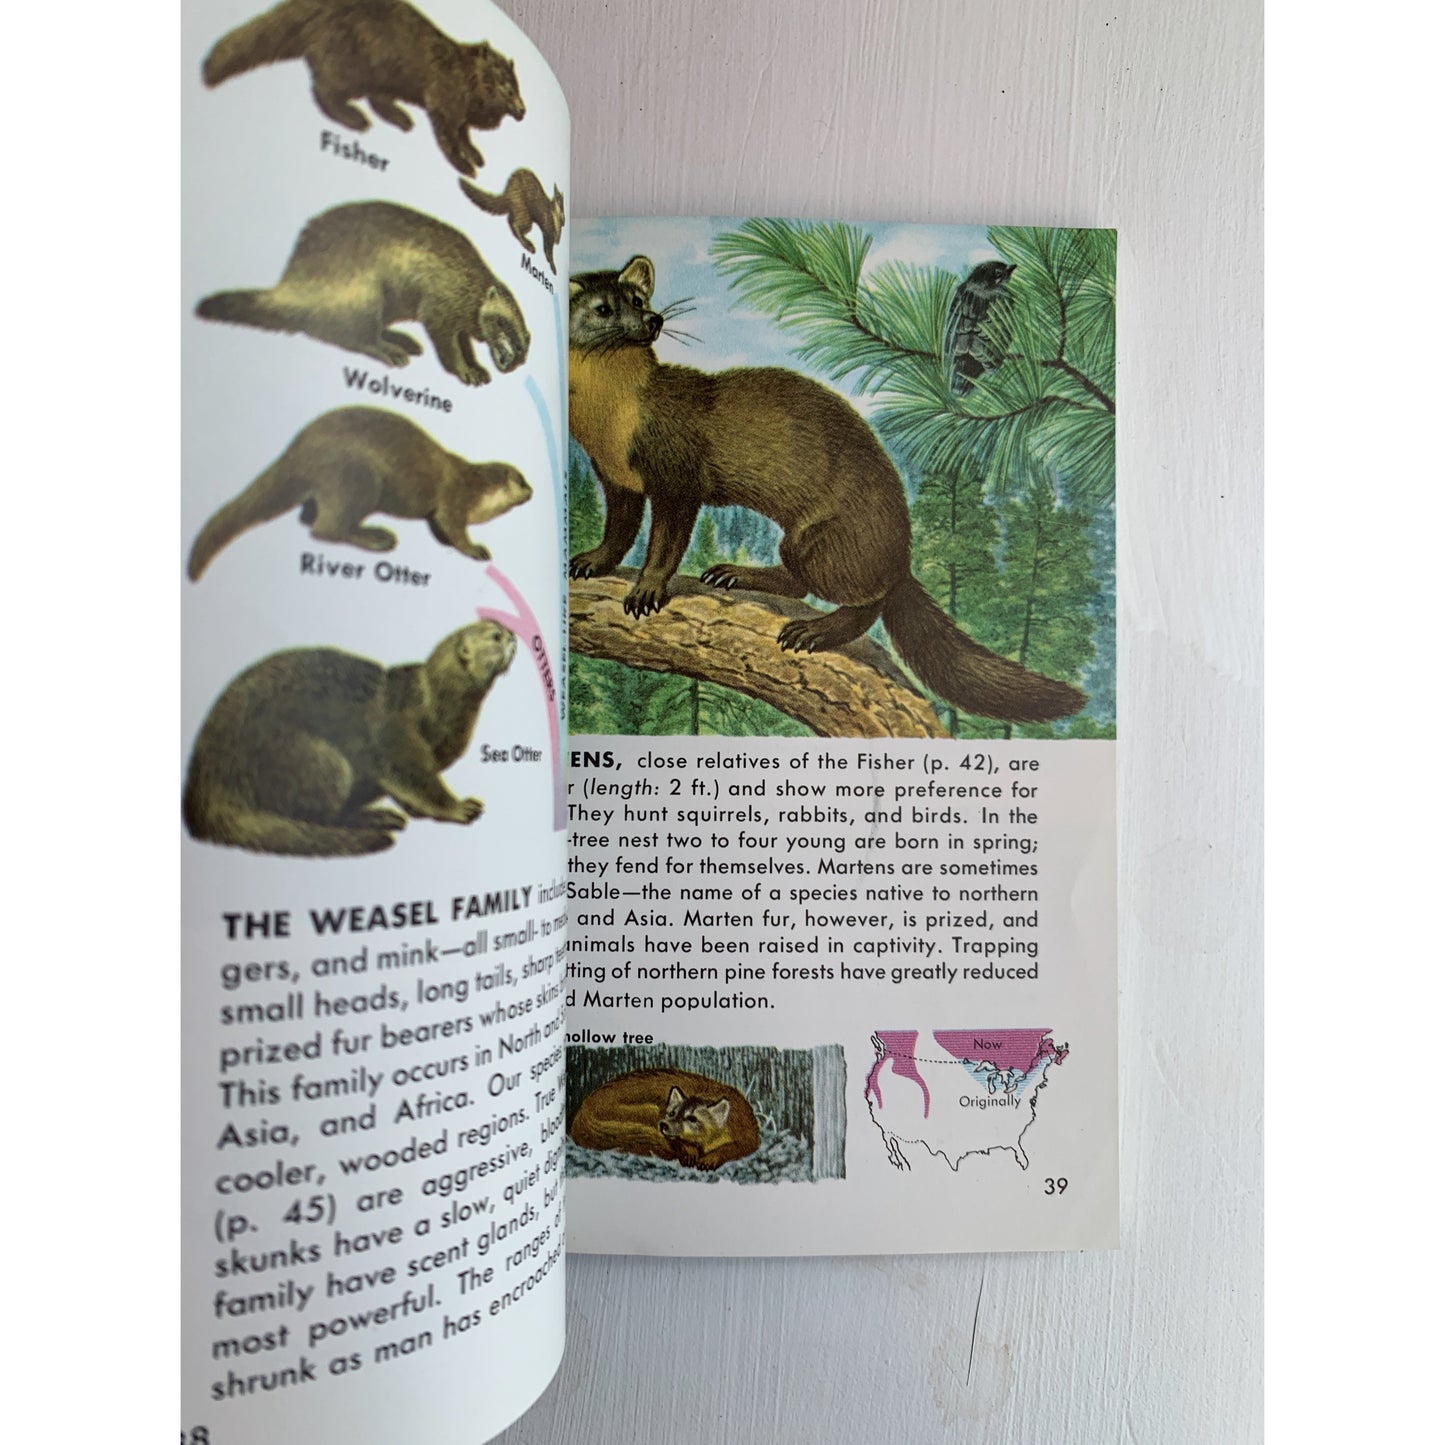 Mammals A Golden Guide 1955 Paperback